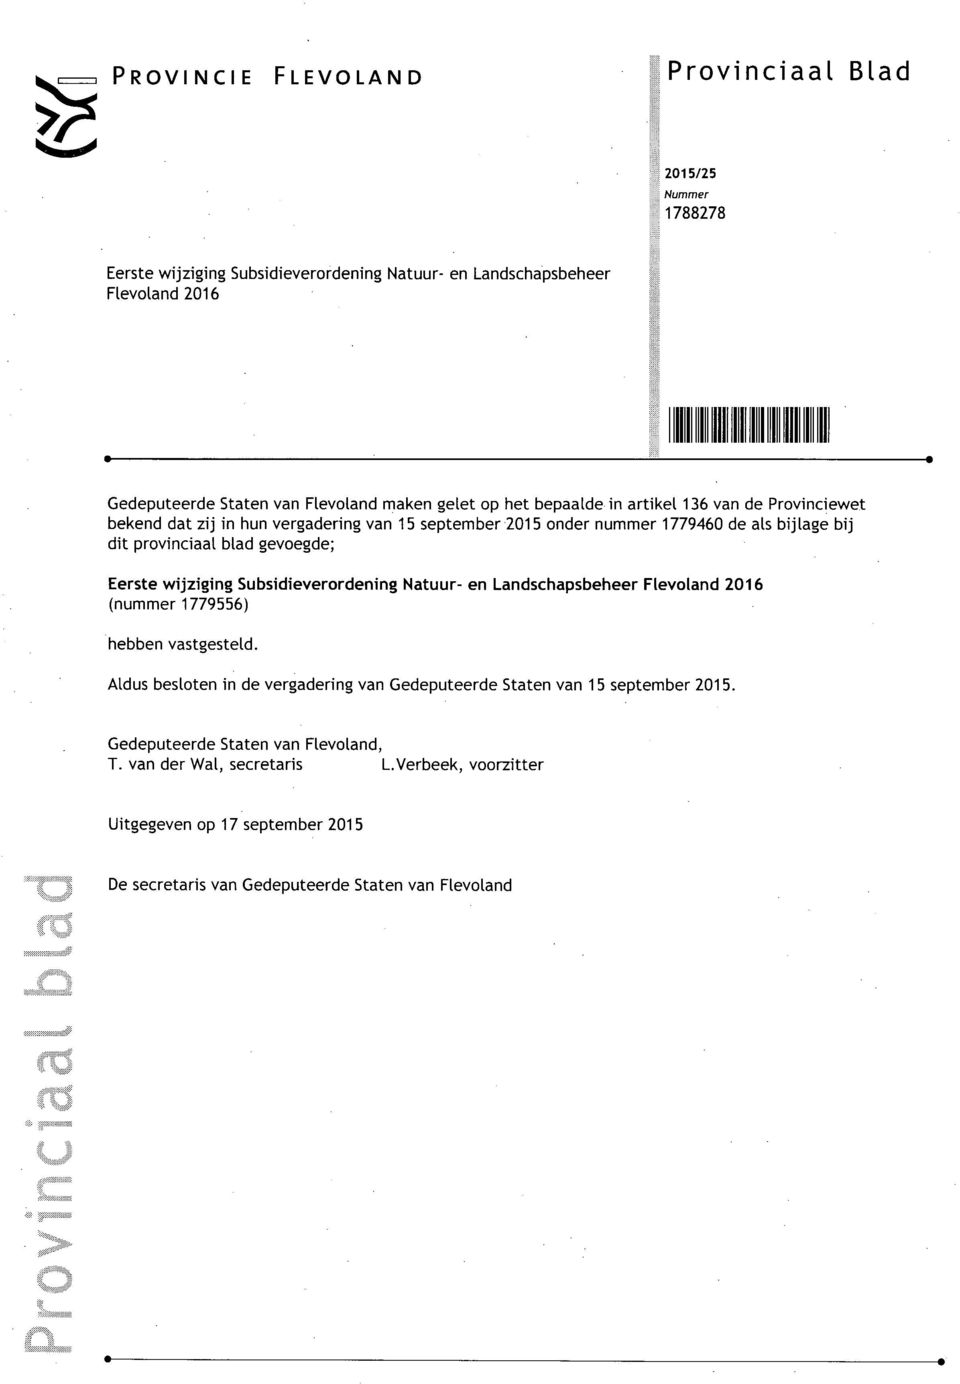 gevoegde; Eerste wijziging Subsidieverordening Natuur- en Landschapsbeheer Flevoland 2016 (nummer 1779556) hebben vastgesteld.